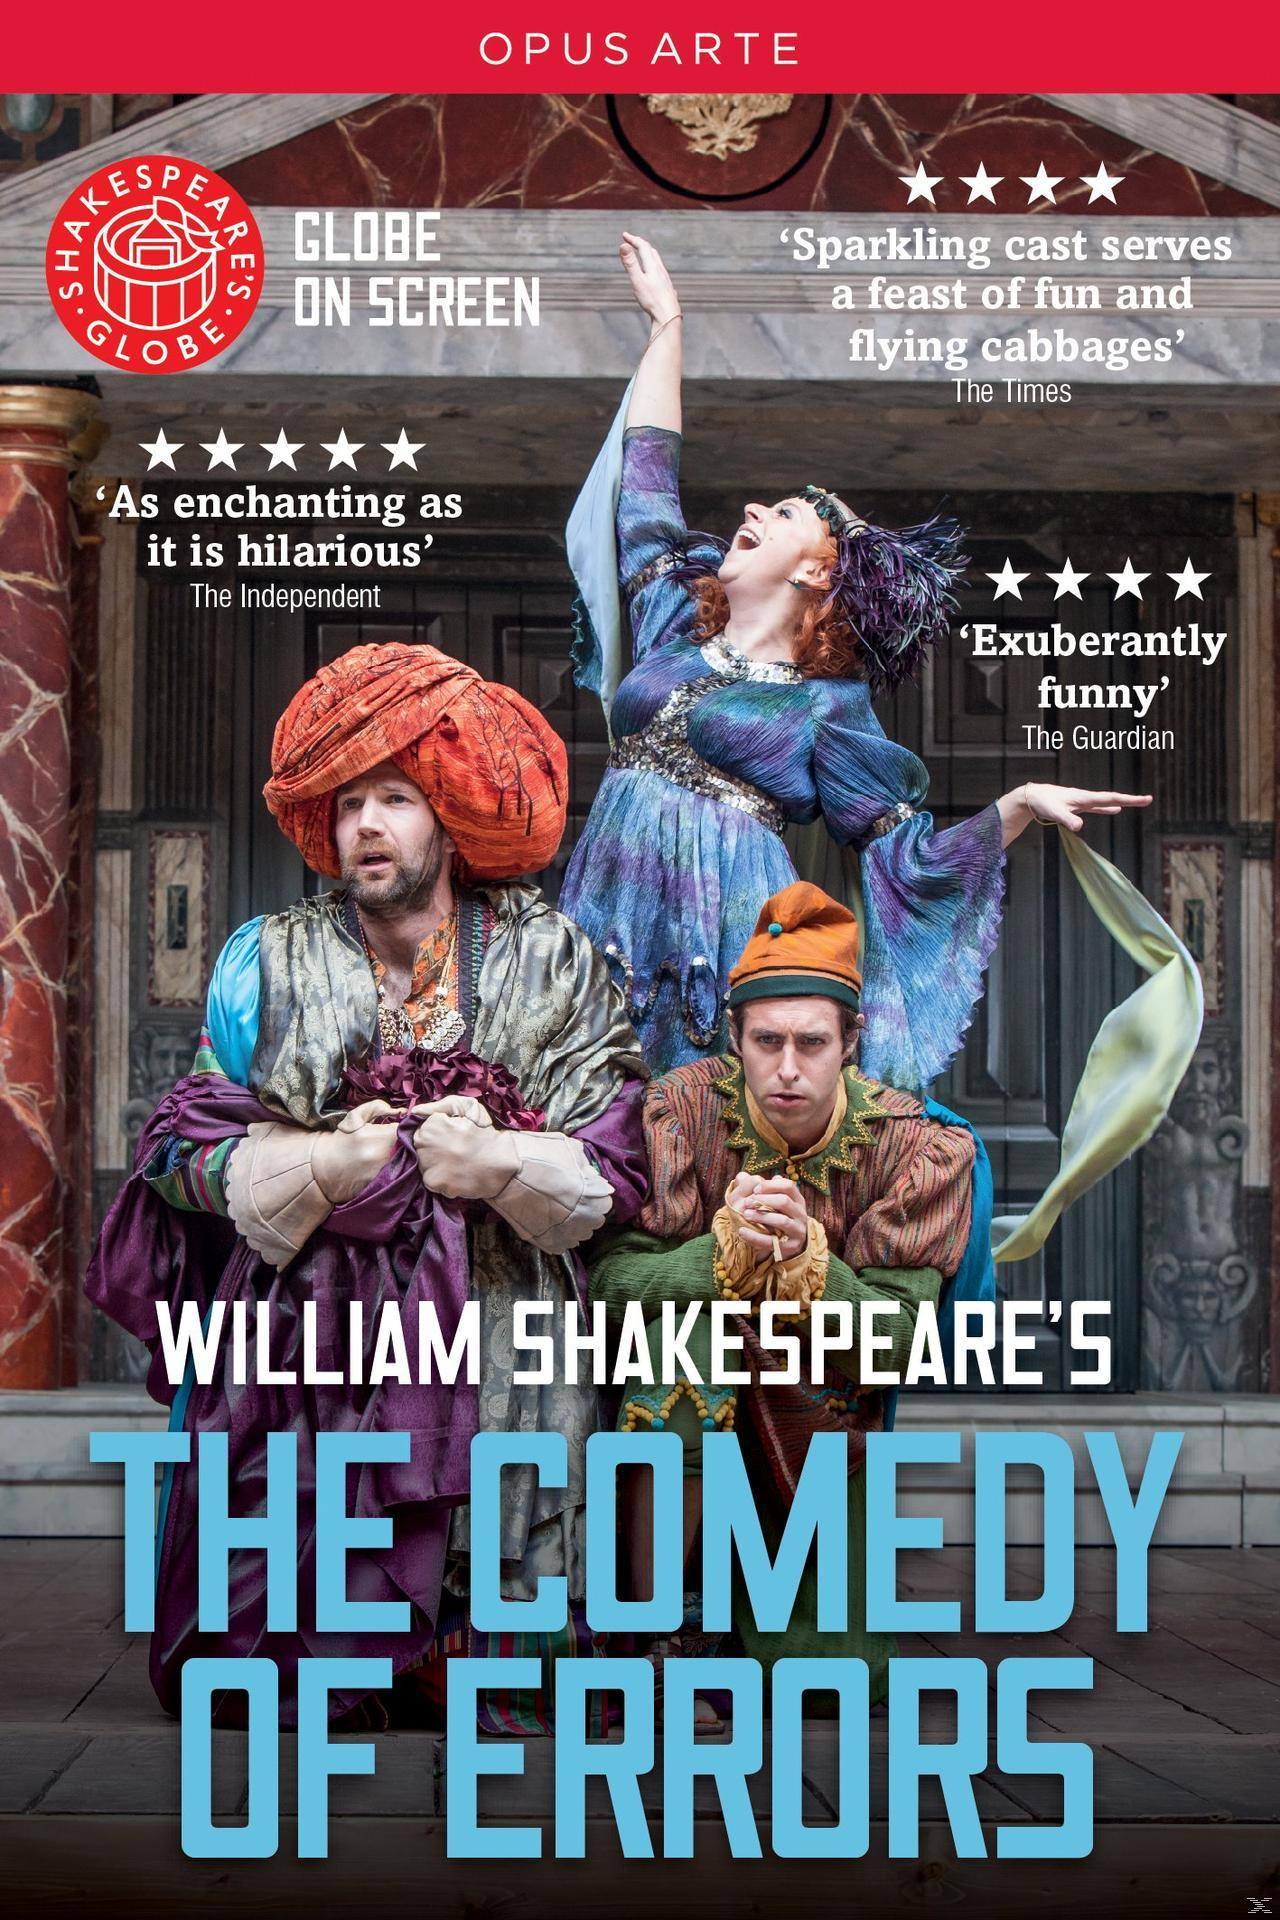 VARIOUS - William Shakespears die (DVD) der - Komödie Irrungen